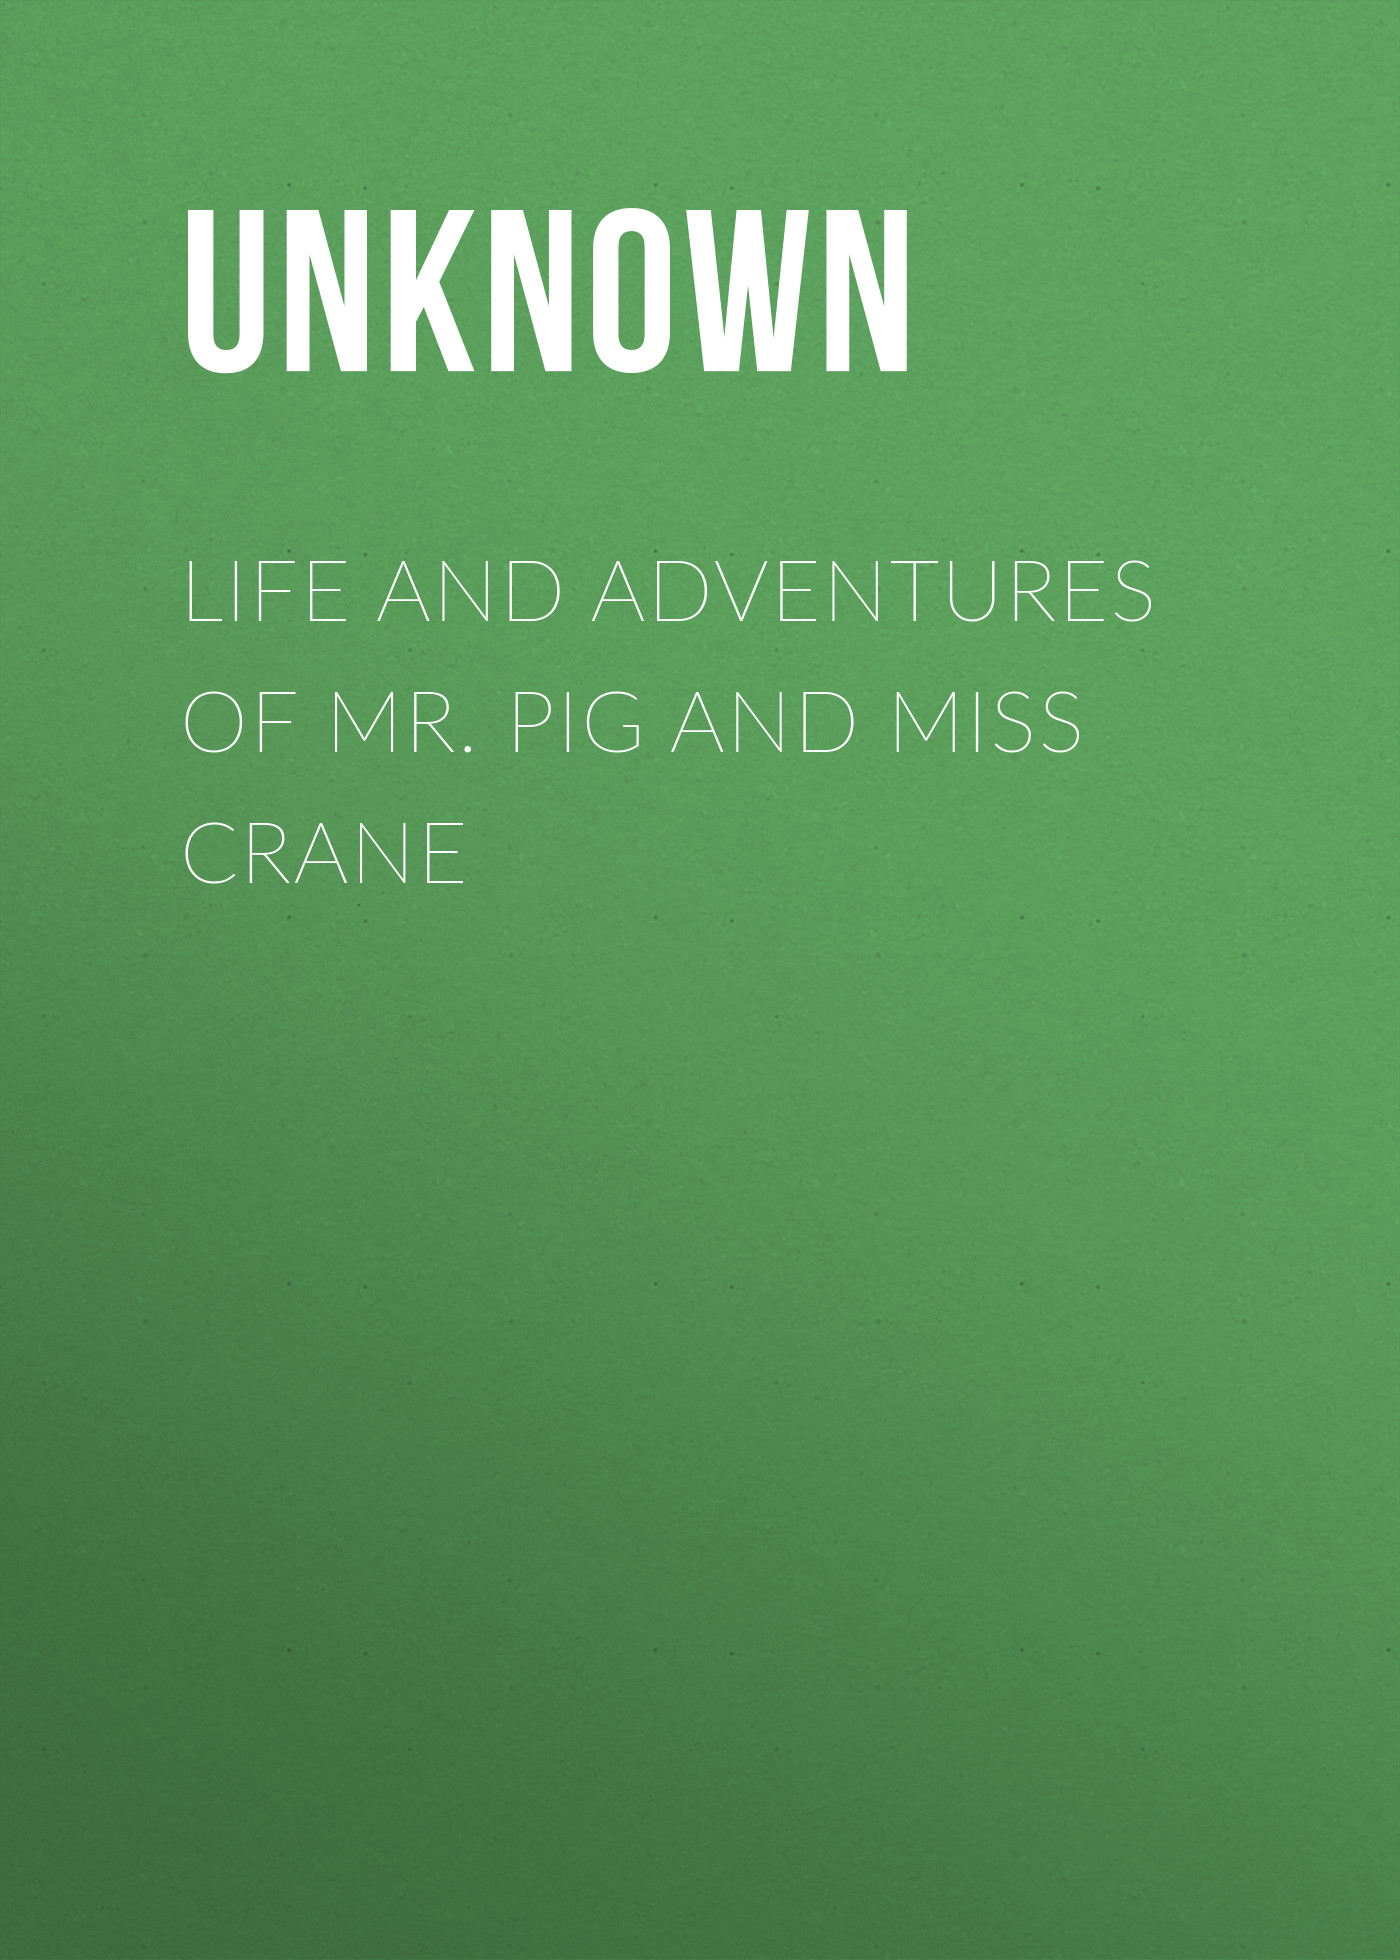 Книга Life and Adventures of Mr. Pig and Miss Crane из серии , созданная  Unknown, может относится к жанру Зарубежная классика, Зарубежная старинная литература. Стоимость электронной книги Life and Adventures of Mr. Pig and Miss Crane с идентификатором 35493015 составляет 0 руб.